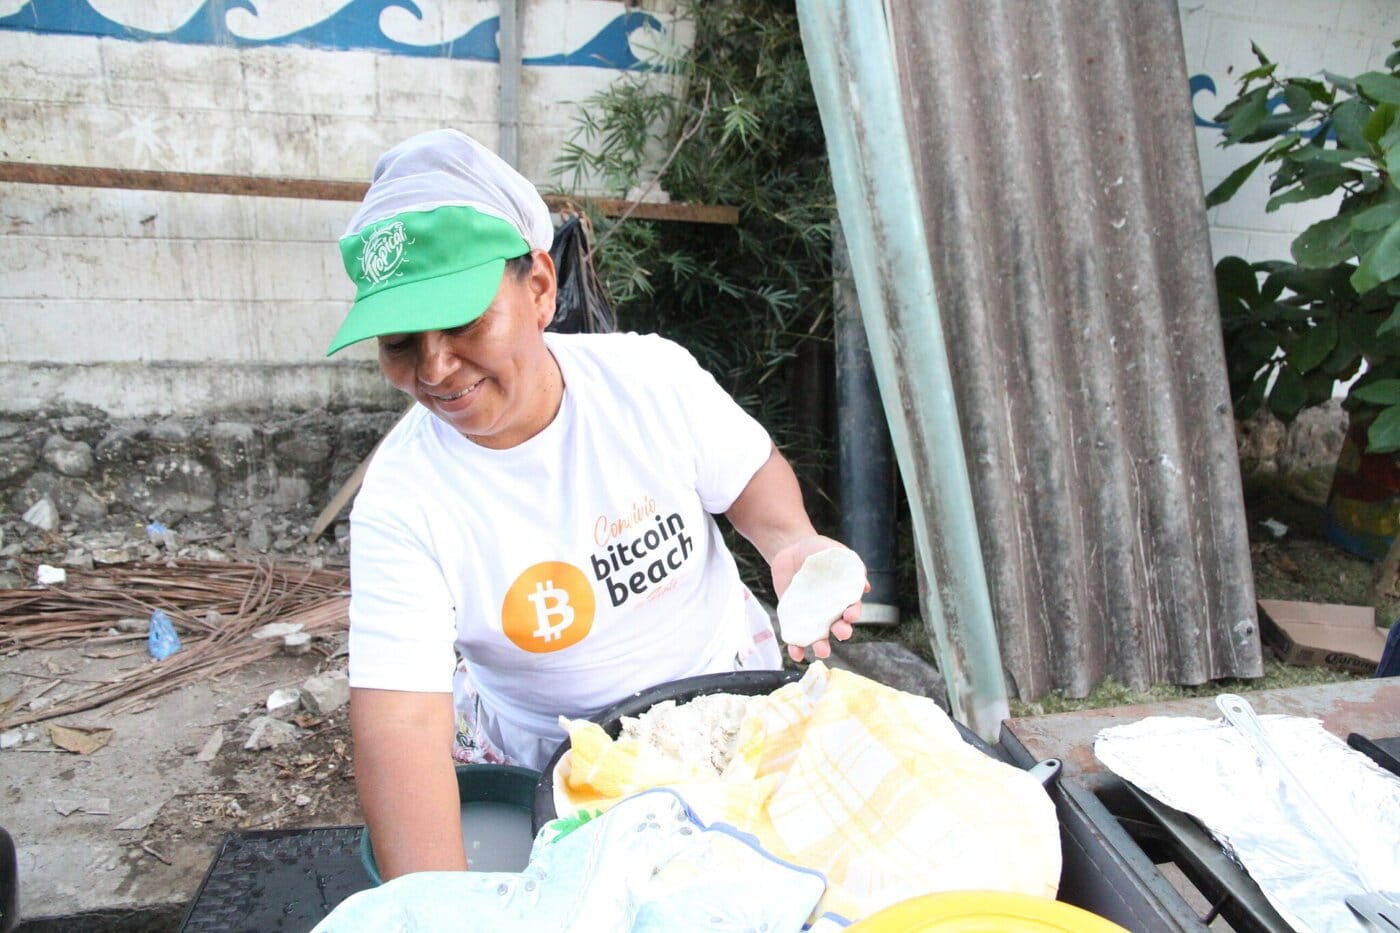 Het kopen van pupusas in El Salvador met Bitcoin is makkelijk.